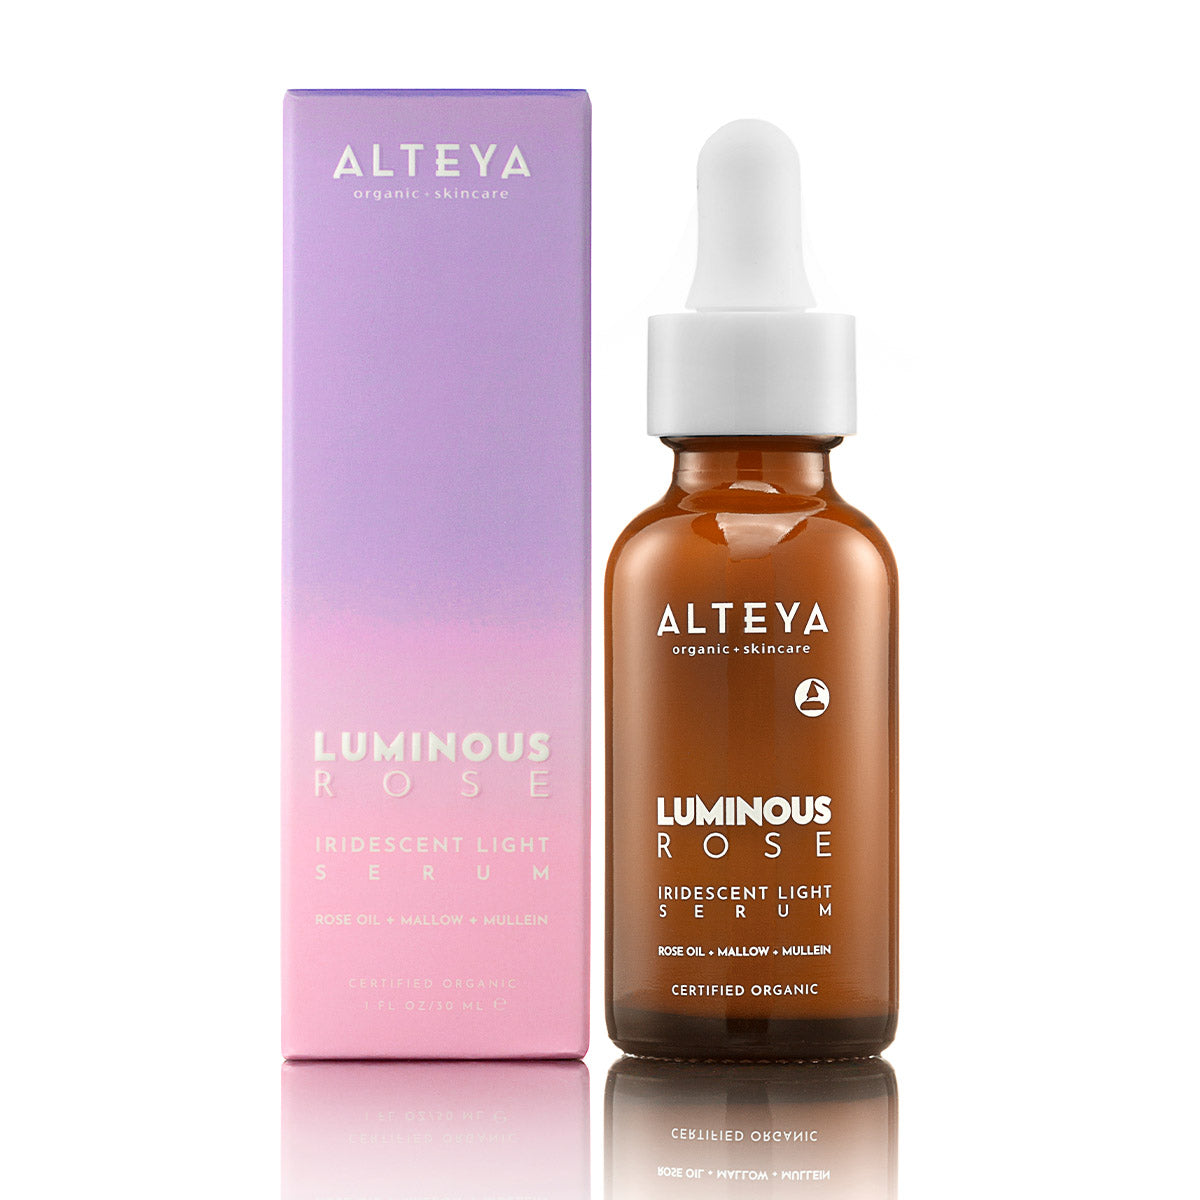 Luminous-Rose-Iridescent-Light-Serum-Alteya-Organics-with-box-skin care